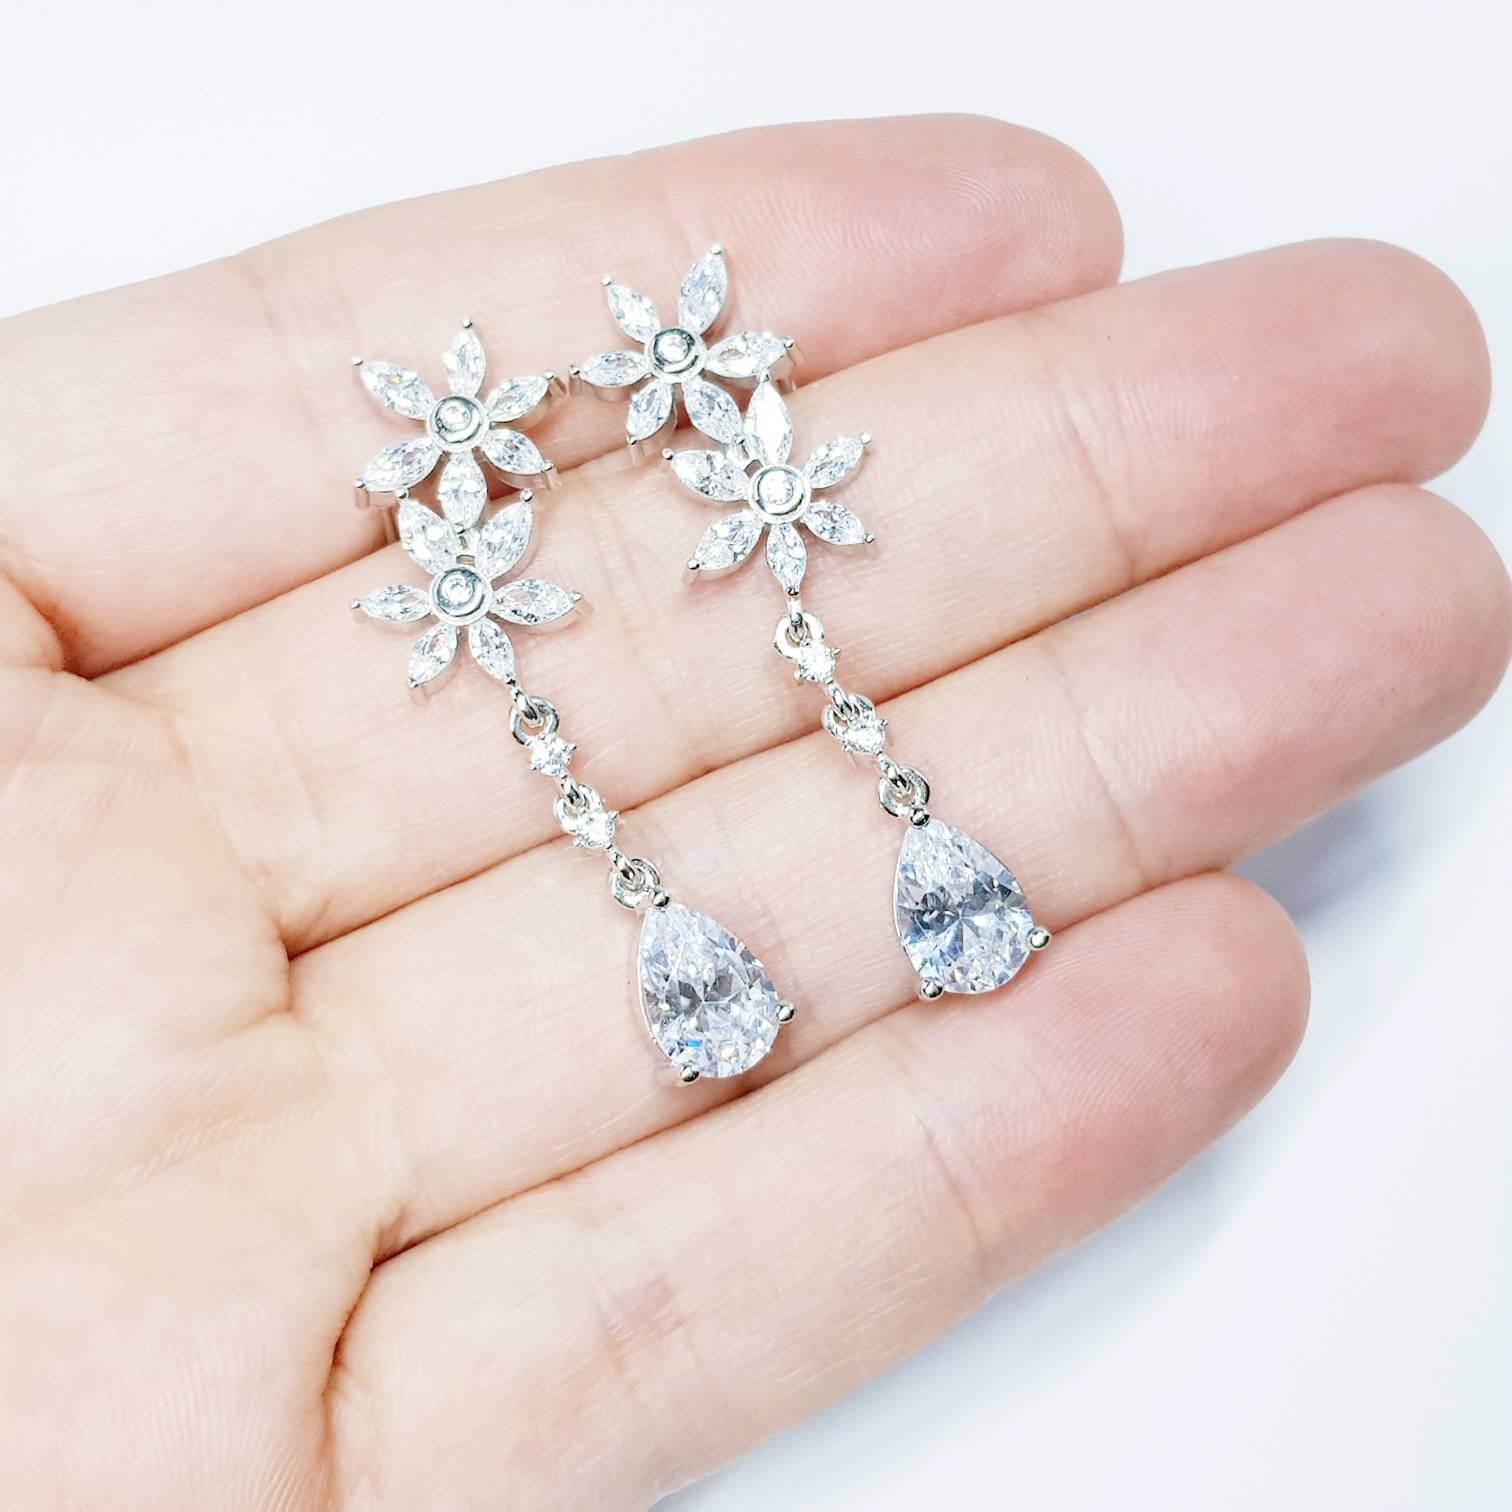 Bridal Diamond Earrings, chandelier Earrings, long teardrop Earrings, marquis and pear shaped stones